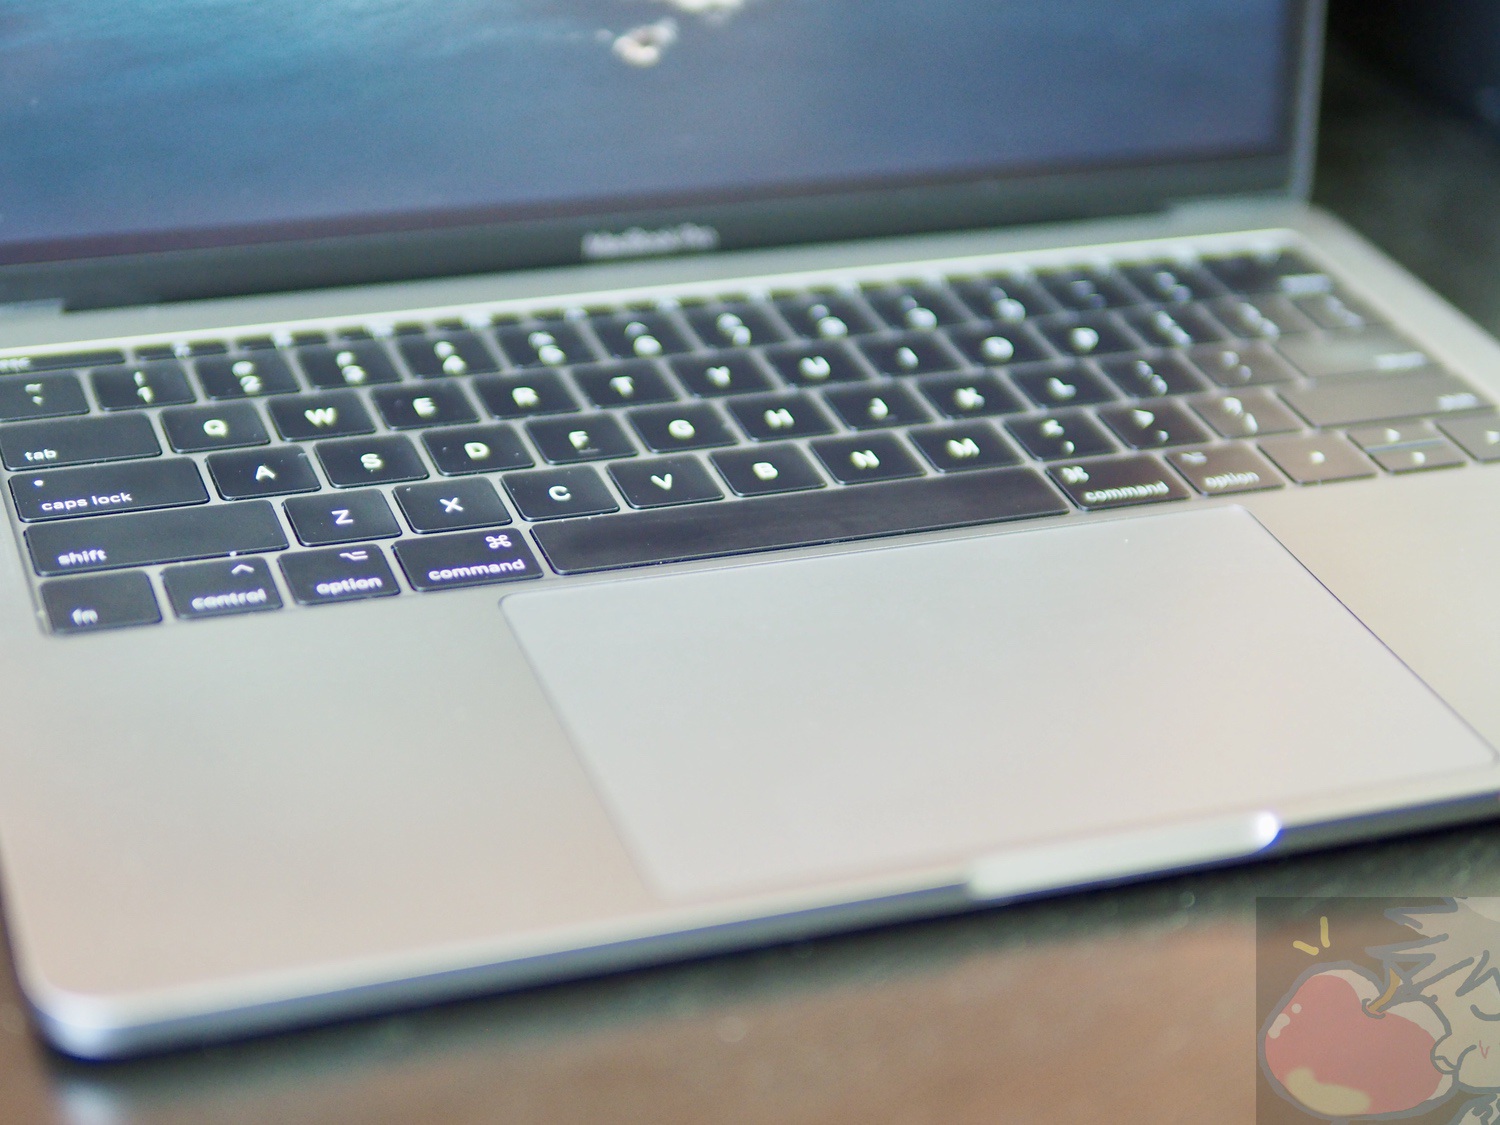 13インチMacBook Pro(2016) 3年目レビュー「最新＝最高ではない」 | Apple信者1億人創出計画